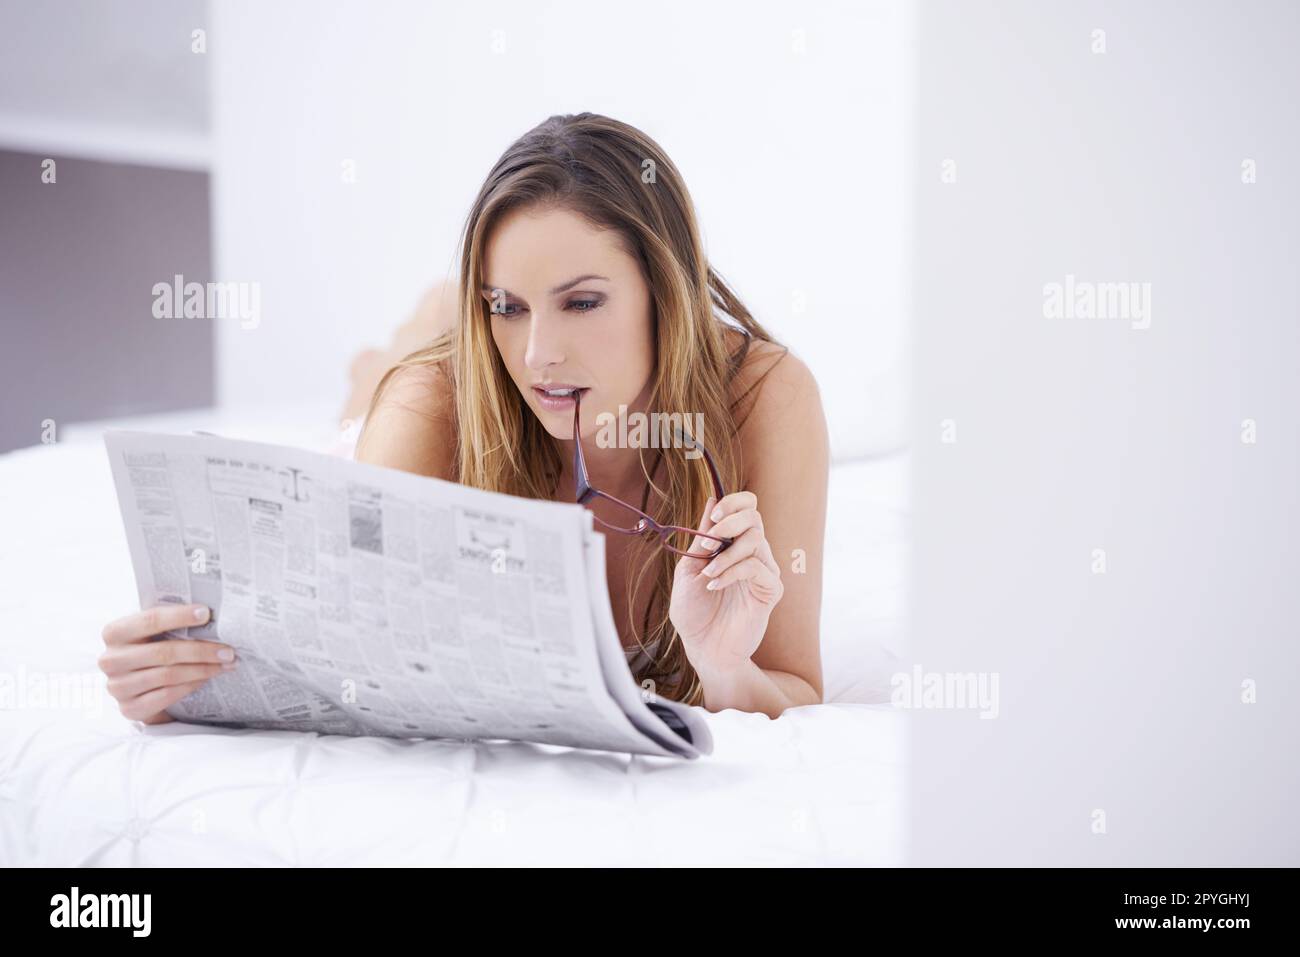 Suivi des événements en cours. Une jeune femme attrayante lisant le papier en étant allongé sur son lit. Banque D'Images